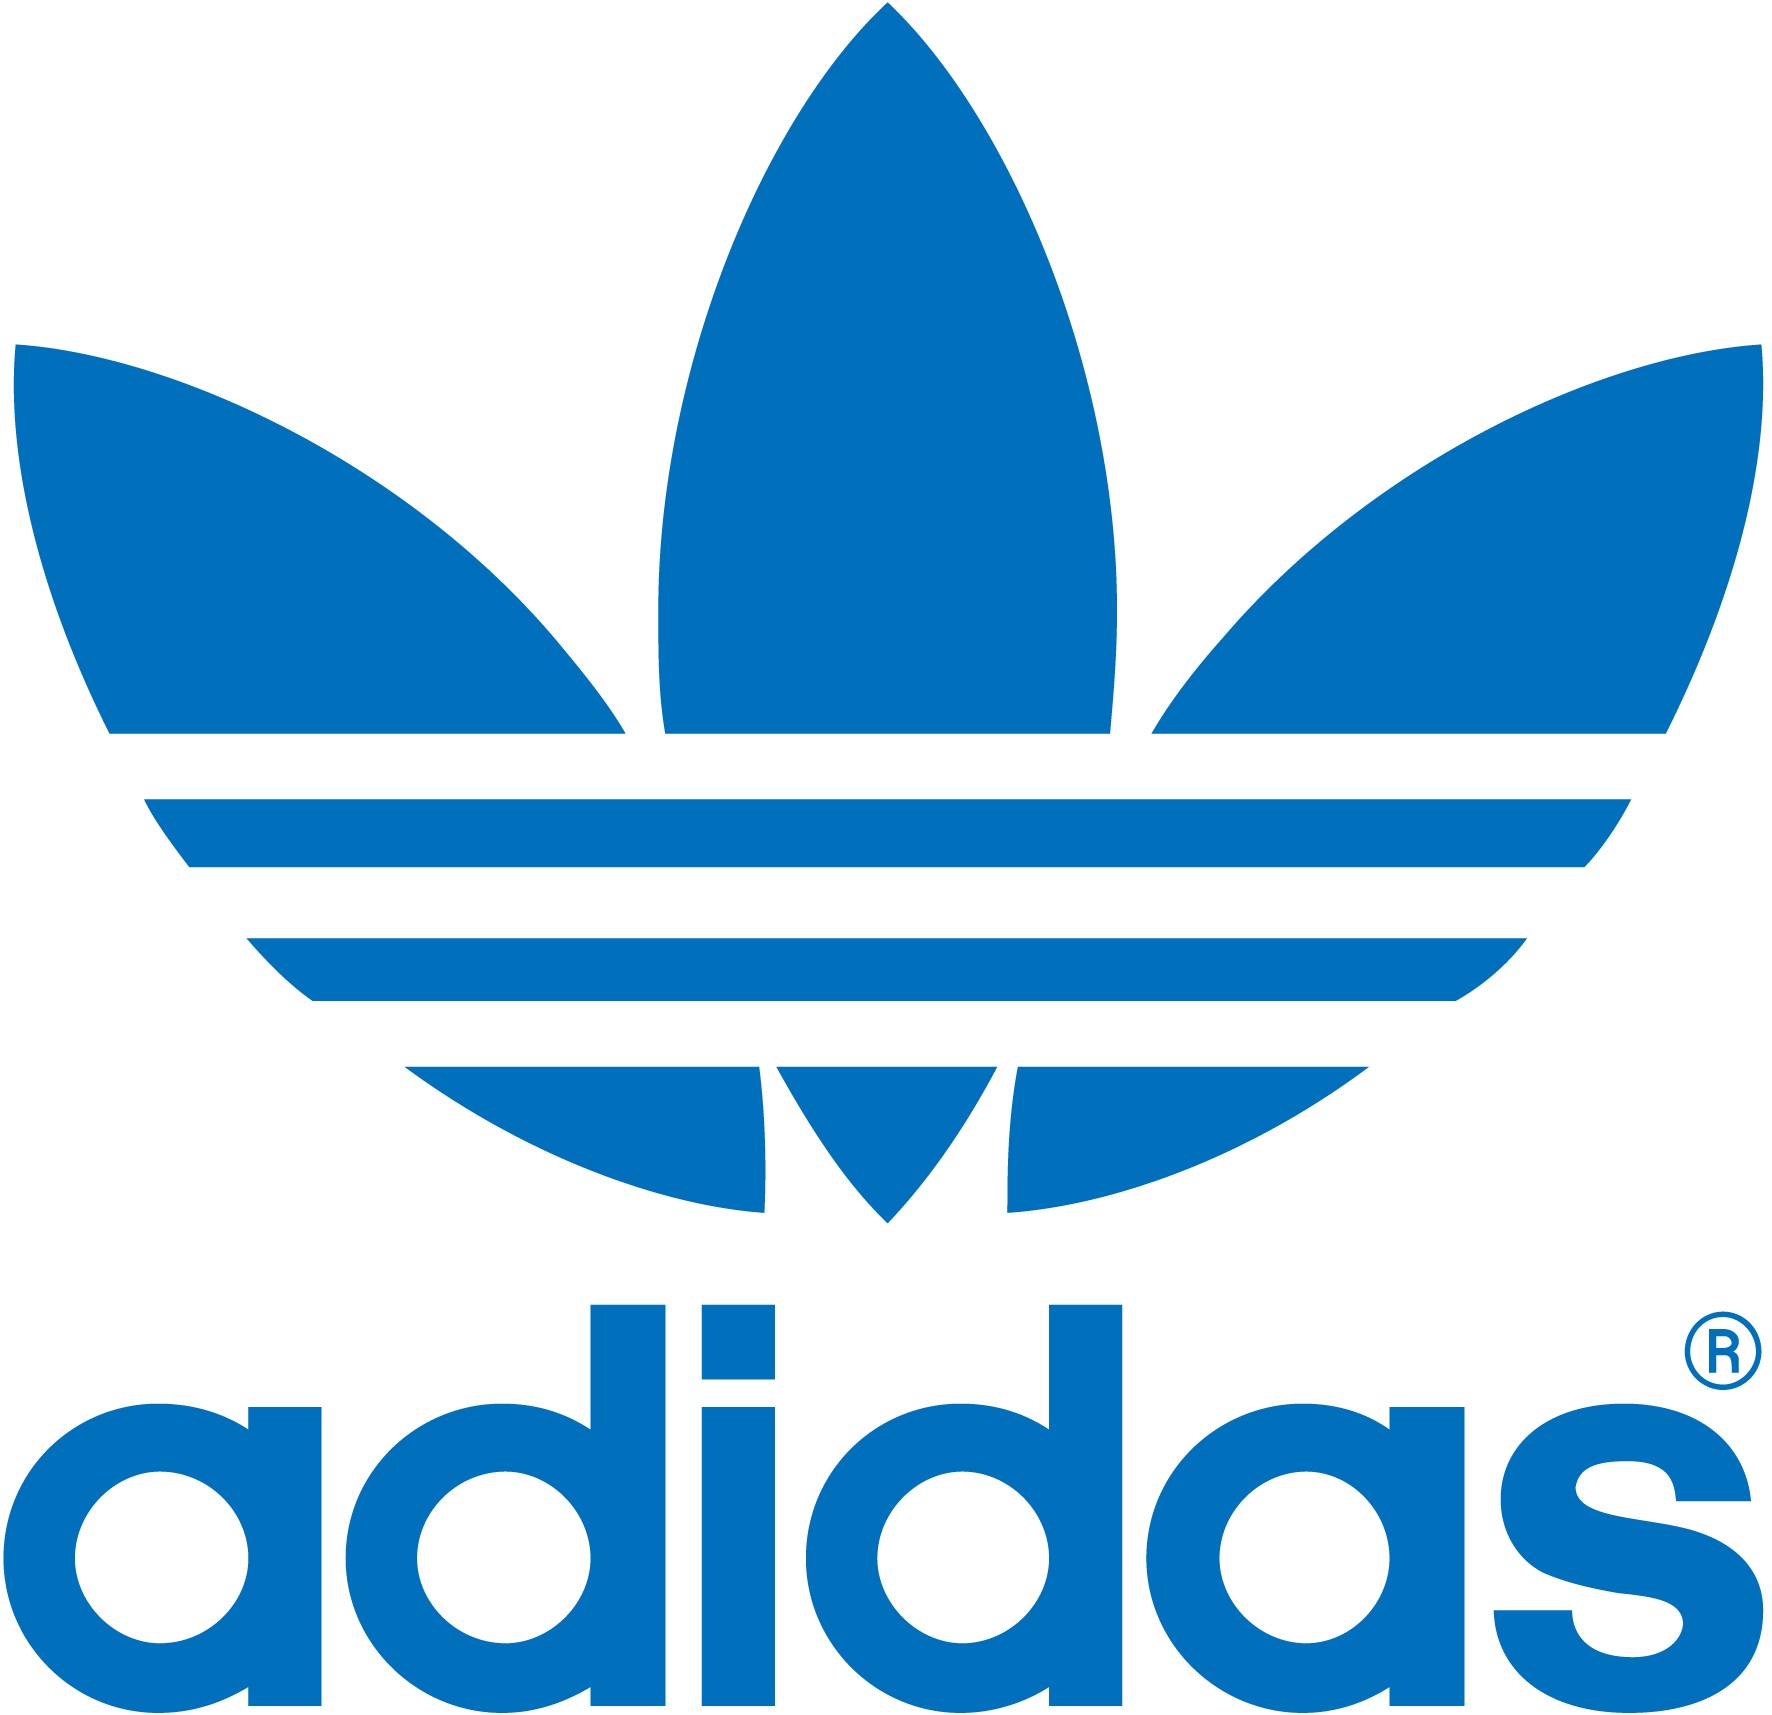 Adidas アディダス ロゴマーク Logomark Mania 世界のかわいいロゴマーク集 企業ロゴ ブランドロゴ